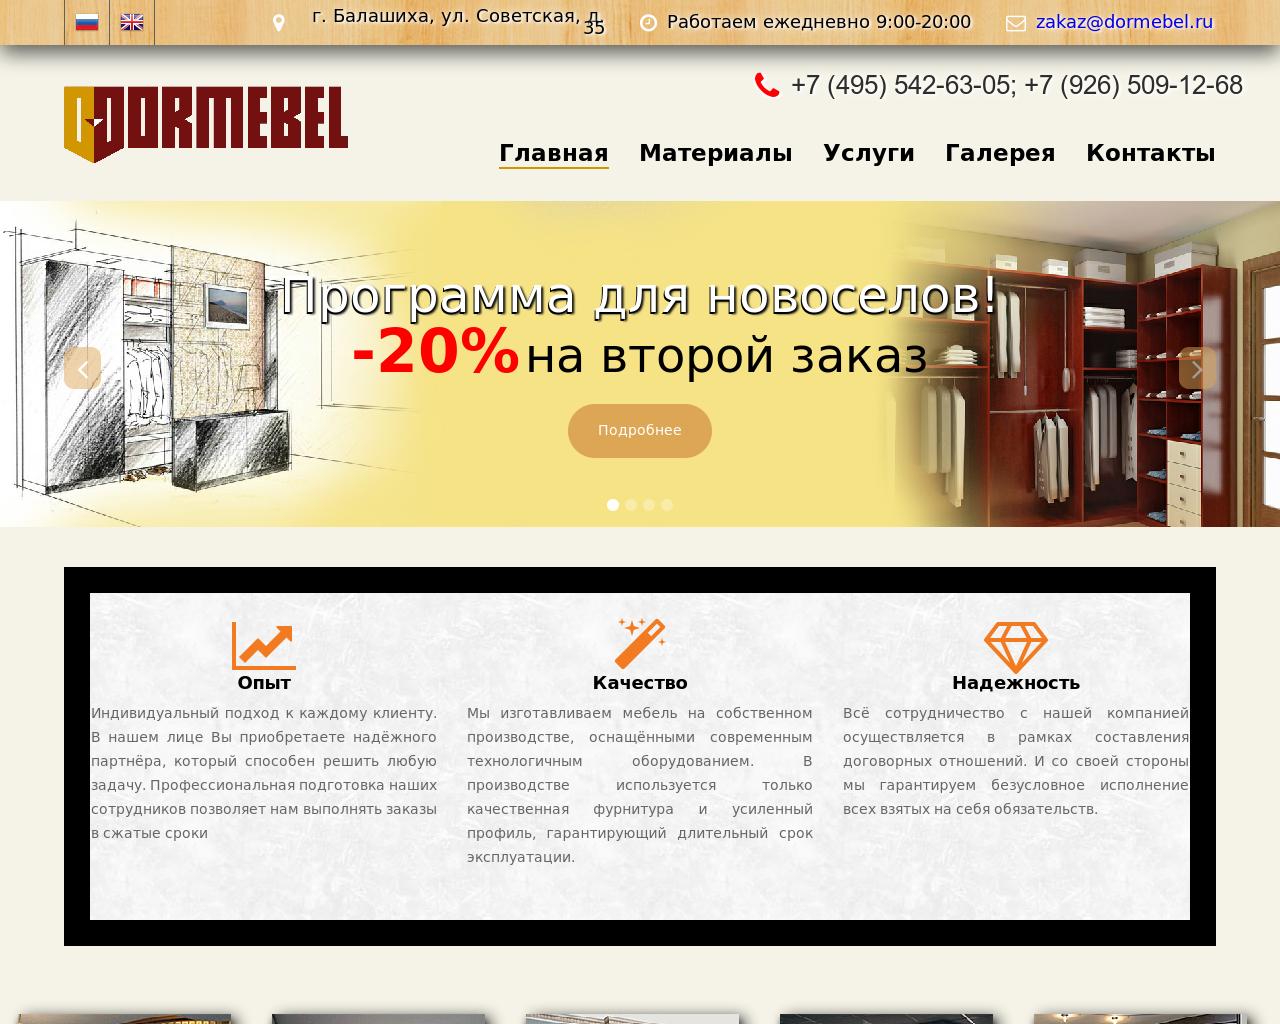 Изображение сайта dormebel.ru в разрешении 1280x1024